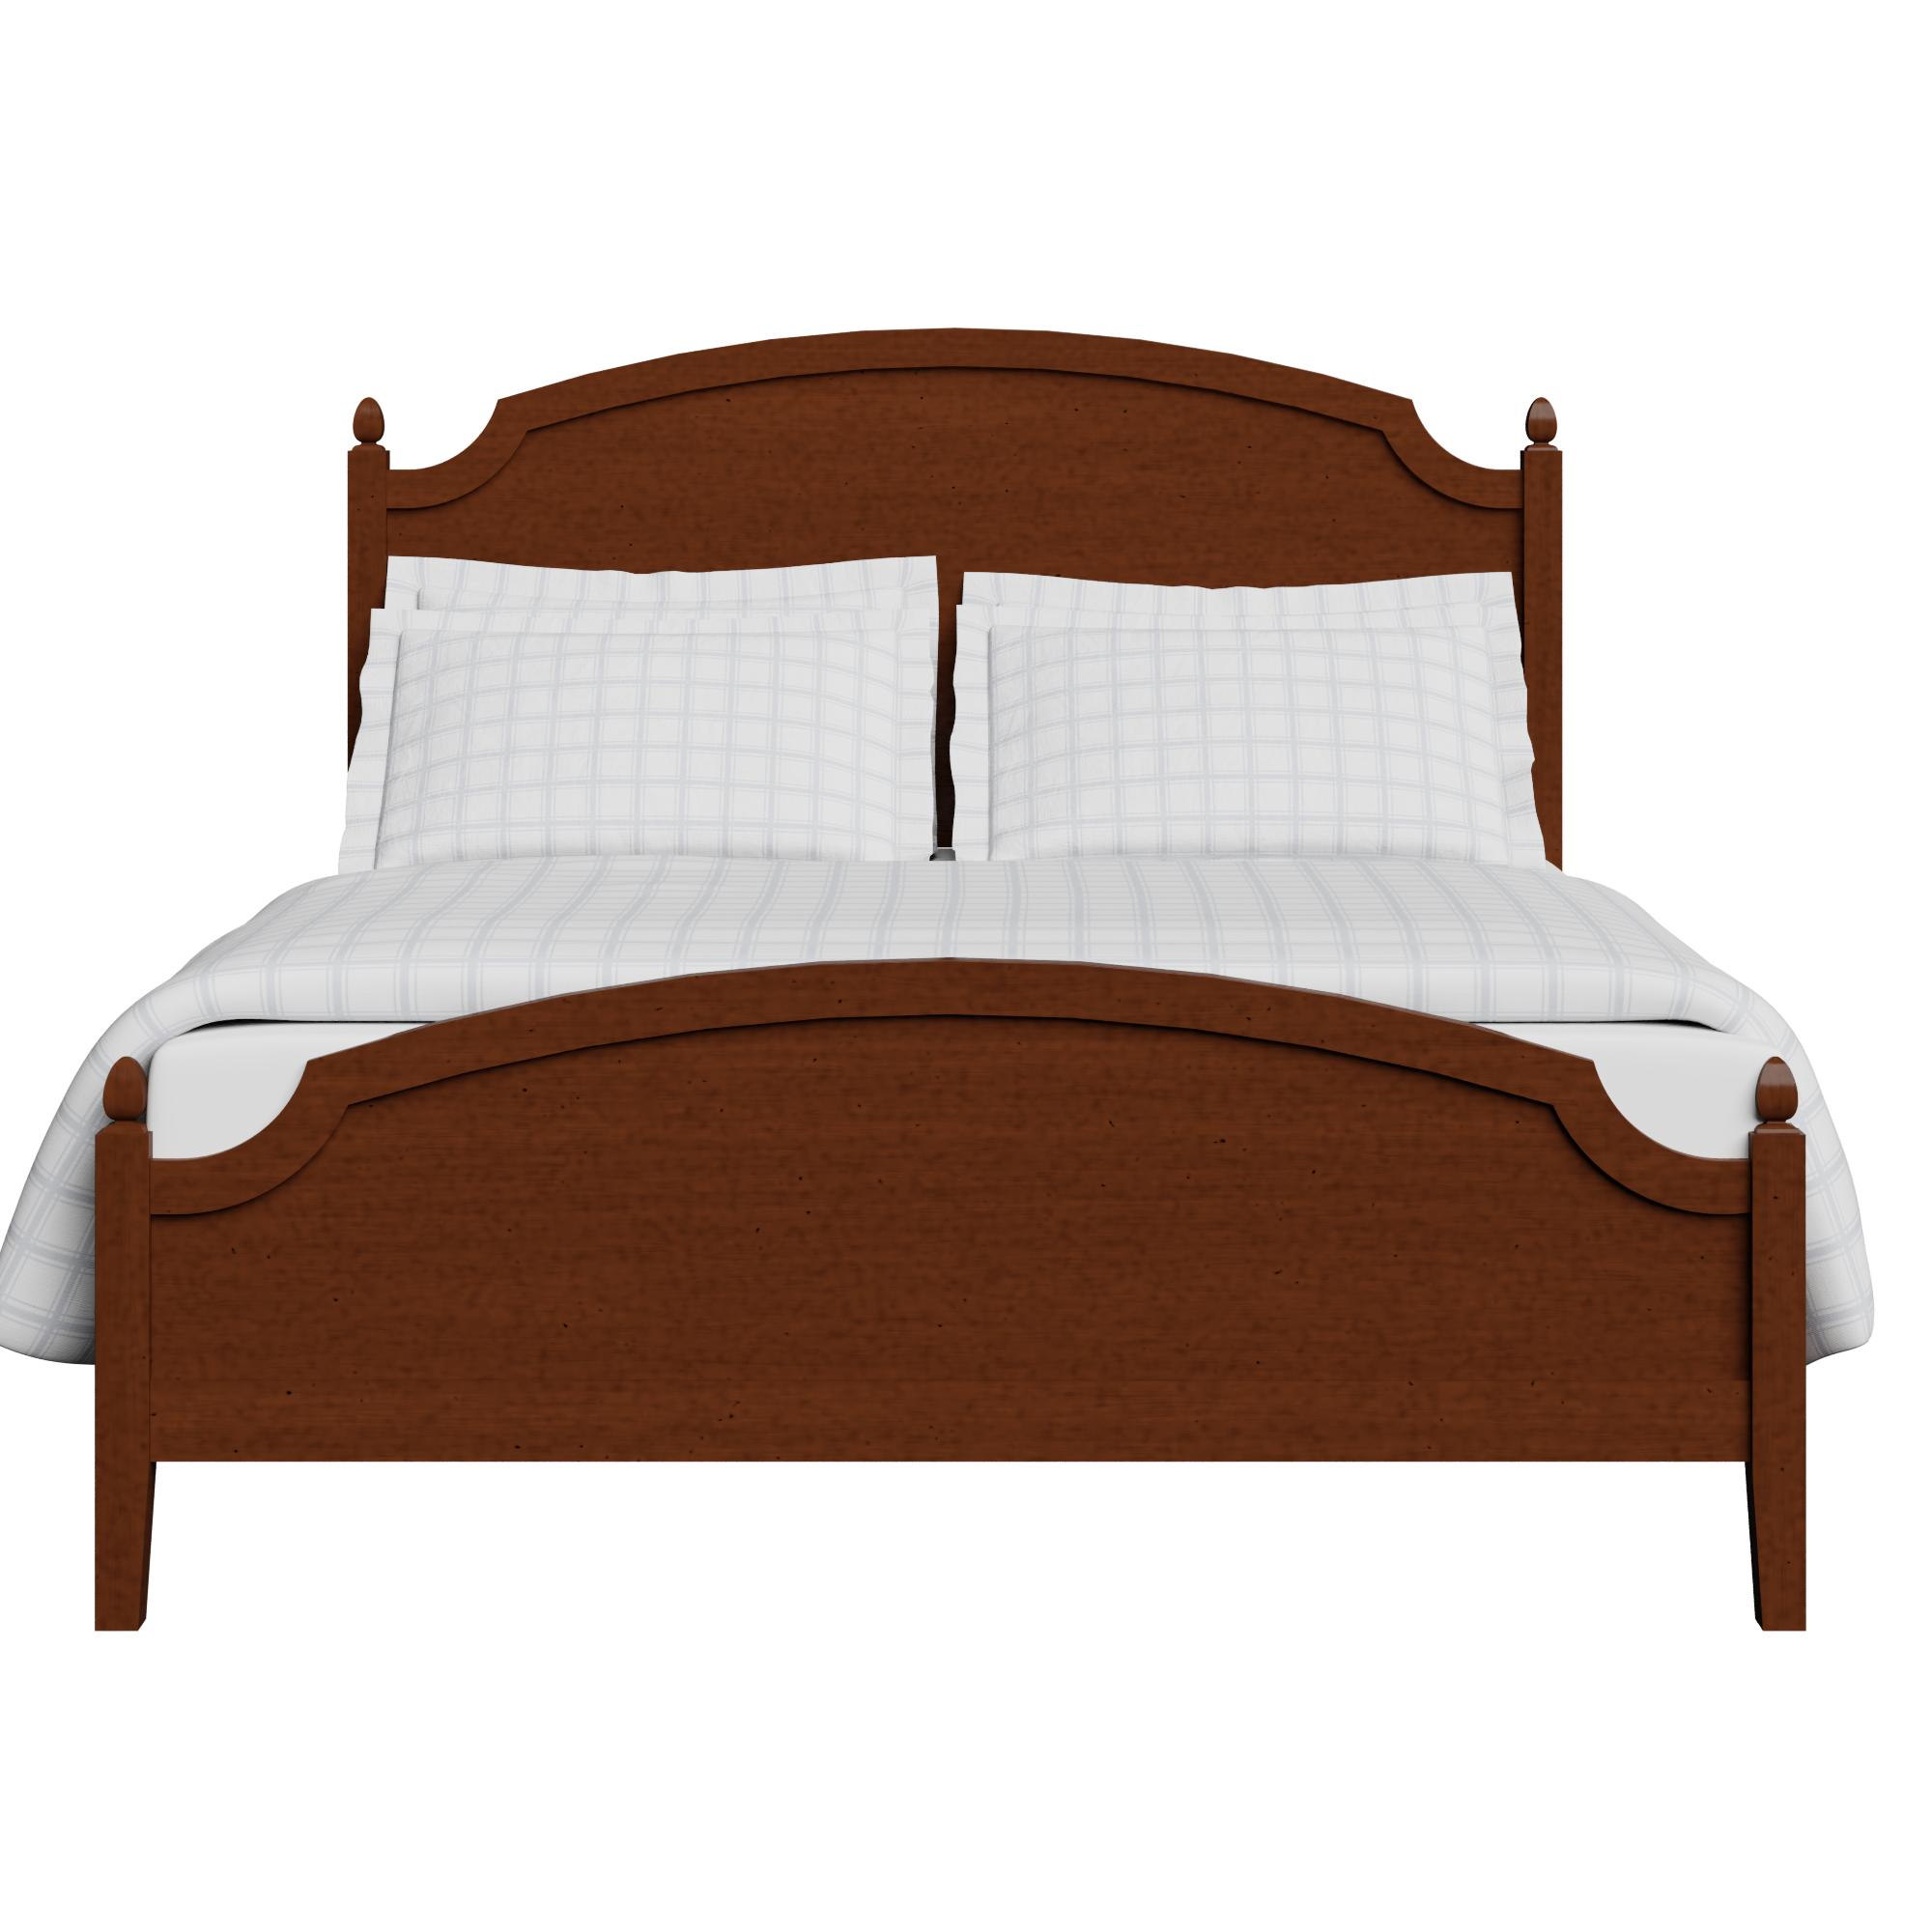 Kipling Low Footend wood bed in dark cherry